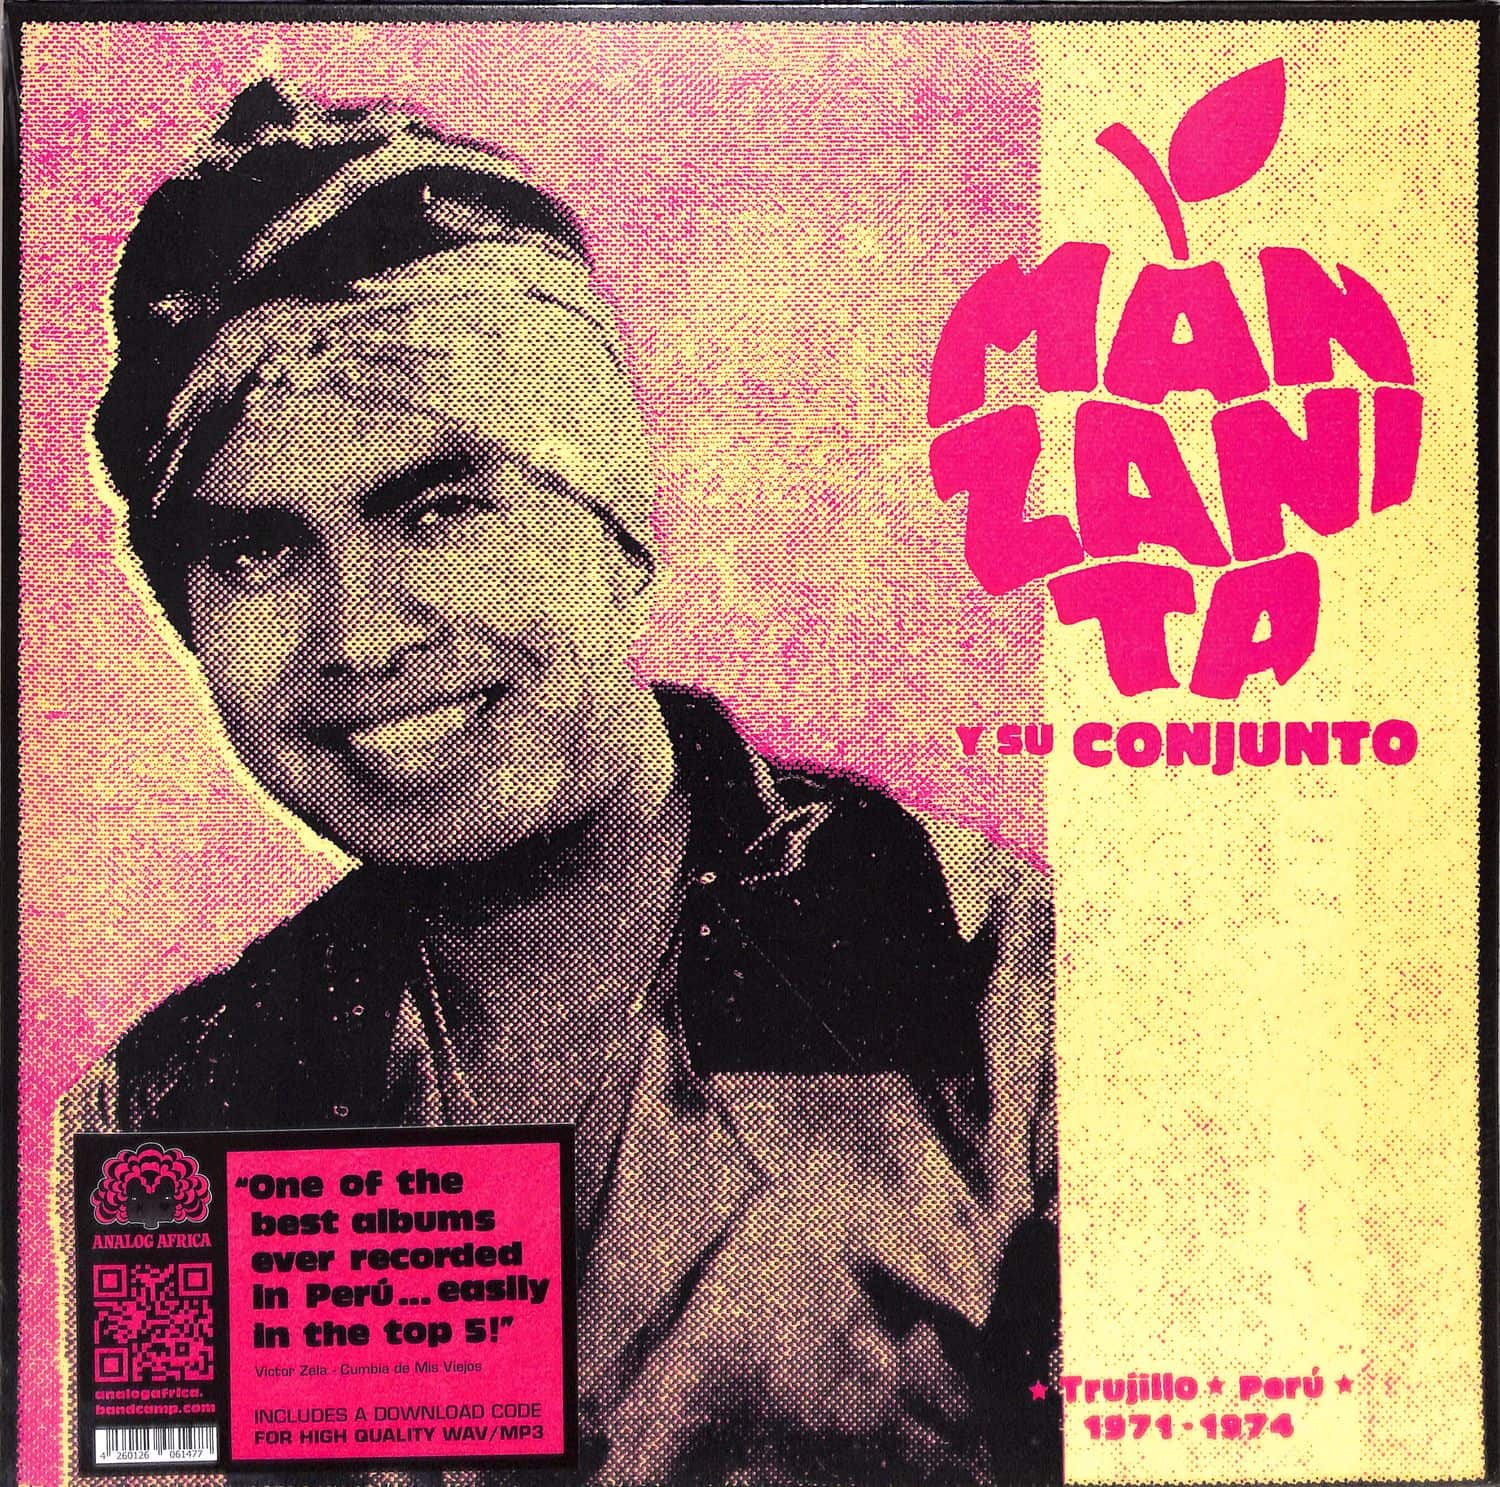 Manzanita Y Su Conjunto - TRUJILLO, PERU 1971 - 1974 